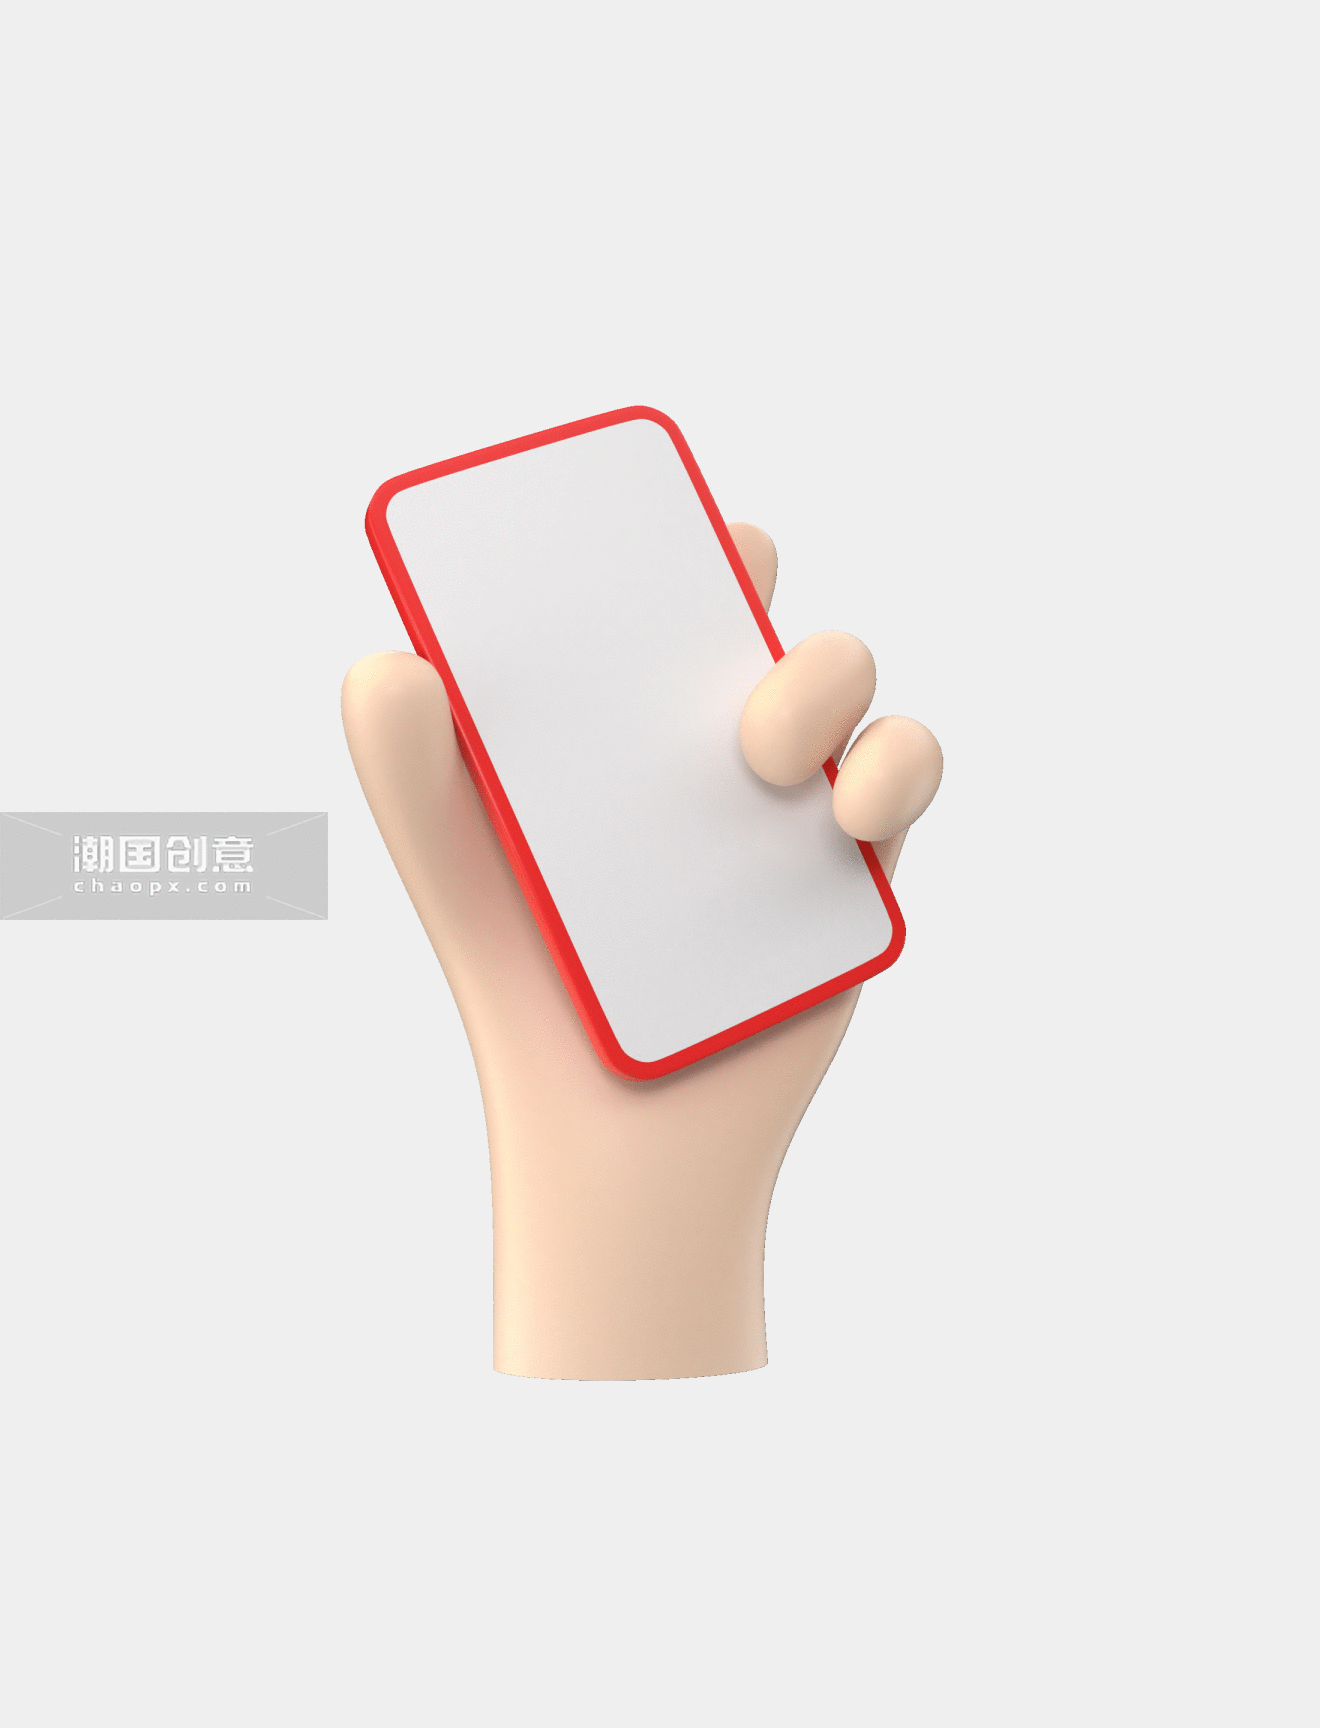 3D立体手拿手机甩出红包红包手势